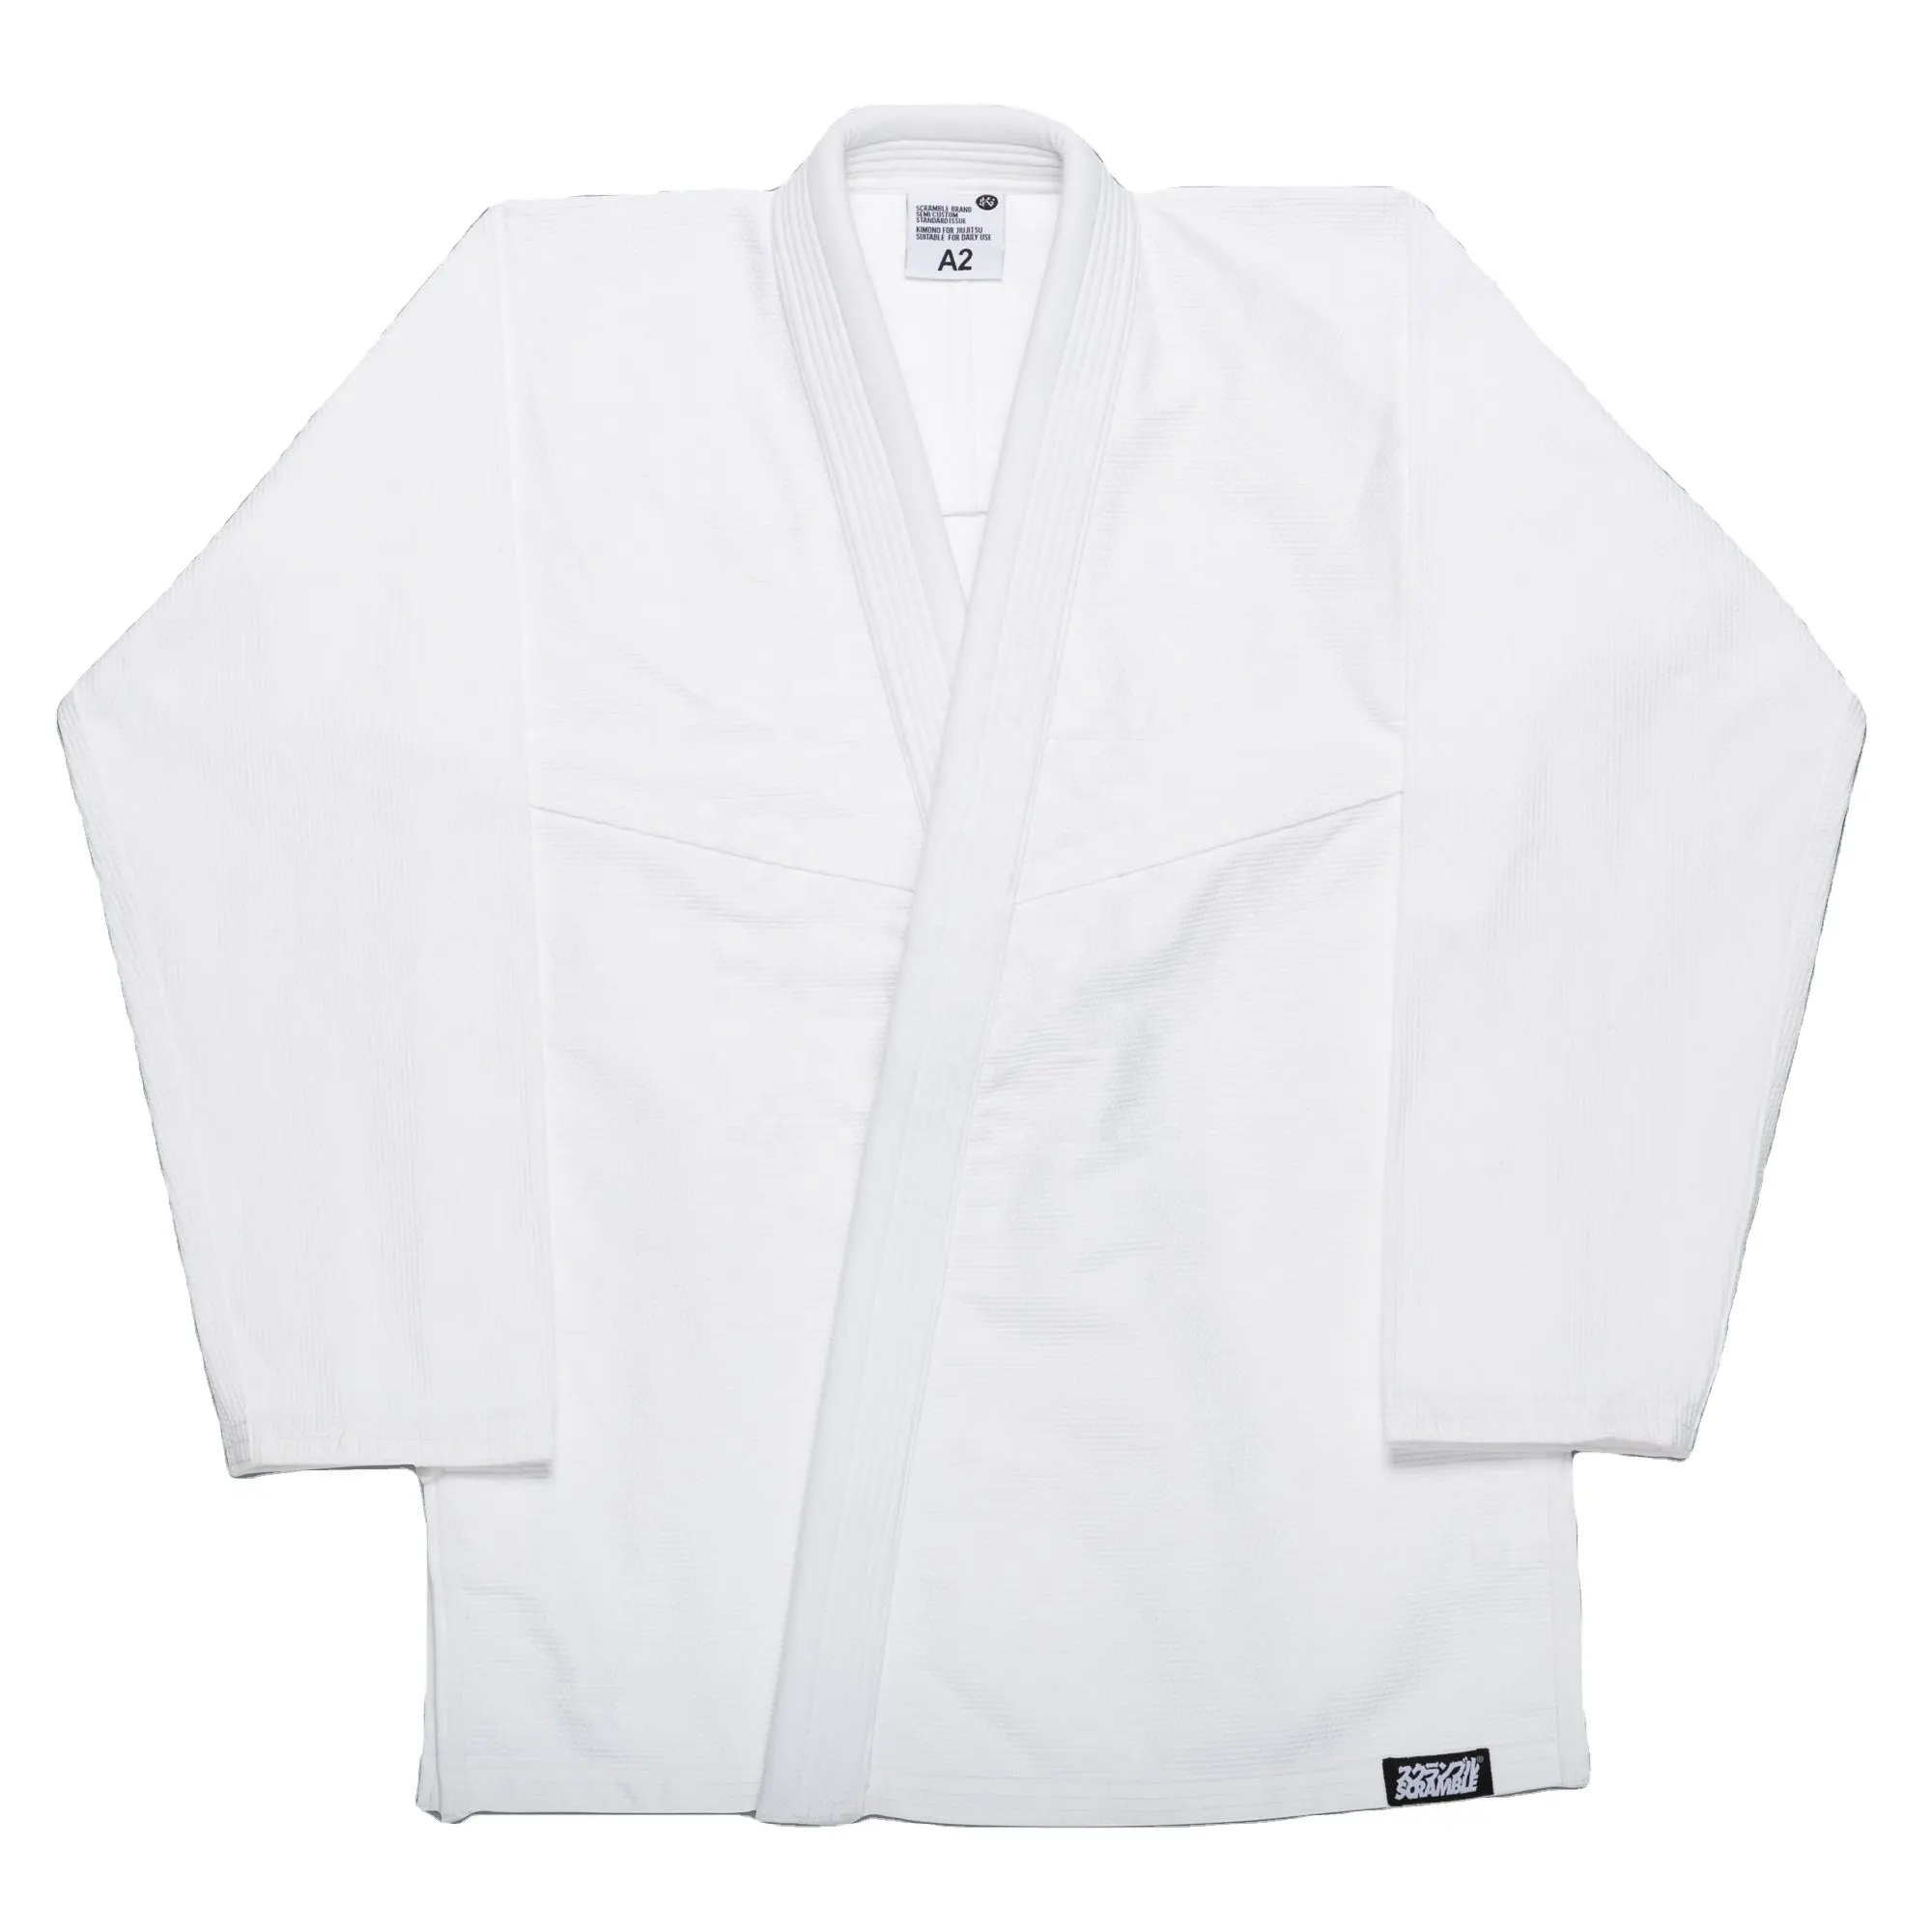 Võ thuật jiu jitsu gi đồng phục 100% cotton jiu jitsu phù hợp với judo phù hợp với Kimono quần áo jiu jitsu mặc trên bán phát ban bảo vệ